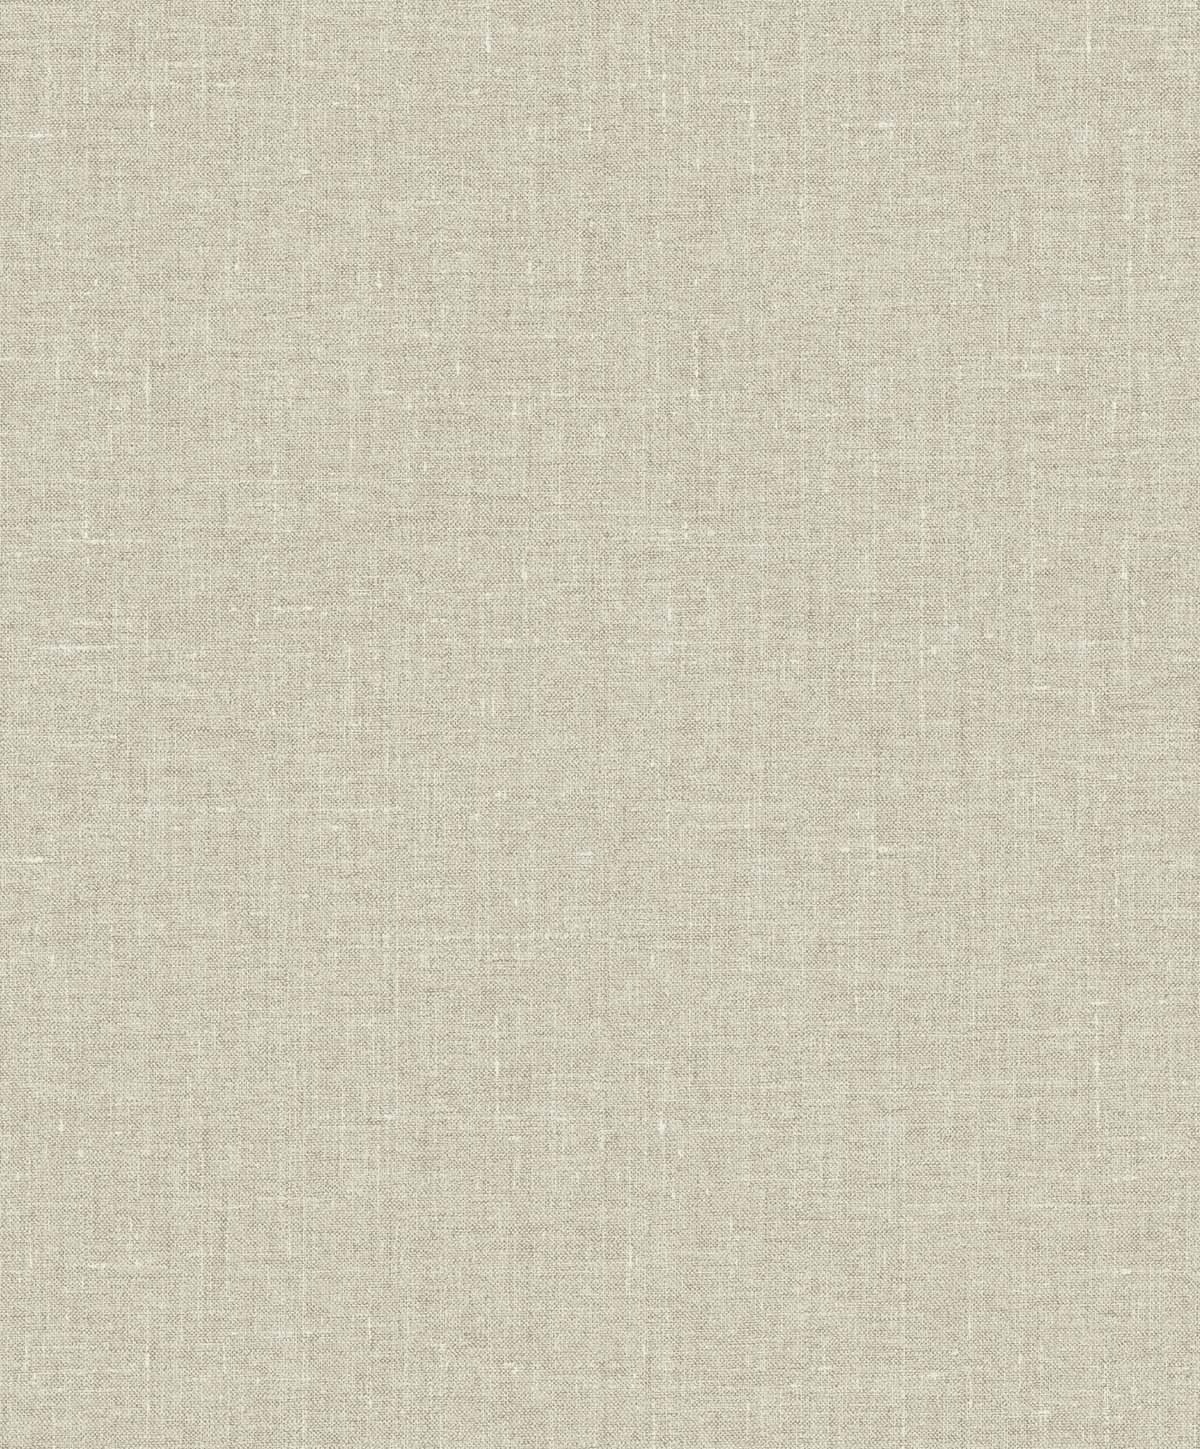 EW10105 | Abington Faux Linen, Beige - Seabrook Designs Wallpaper